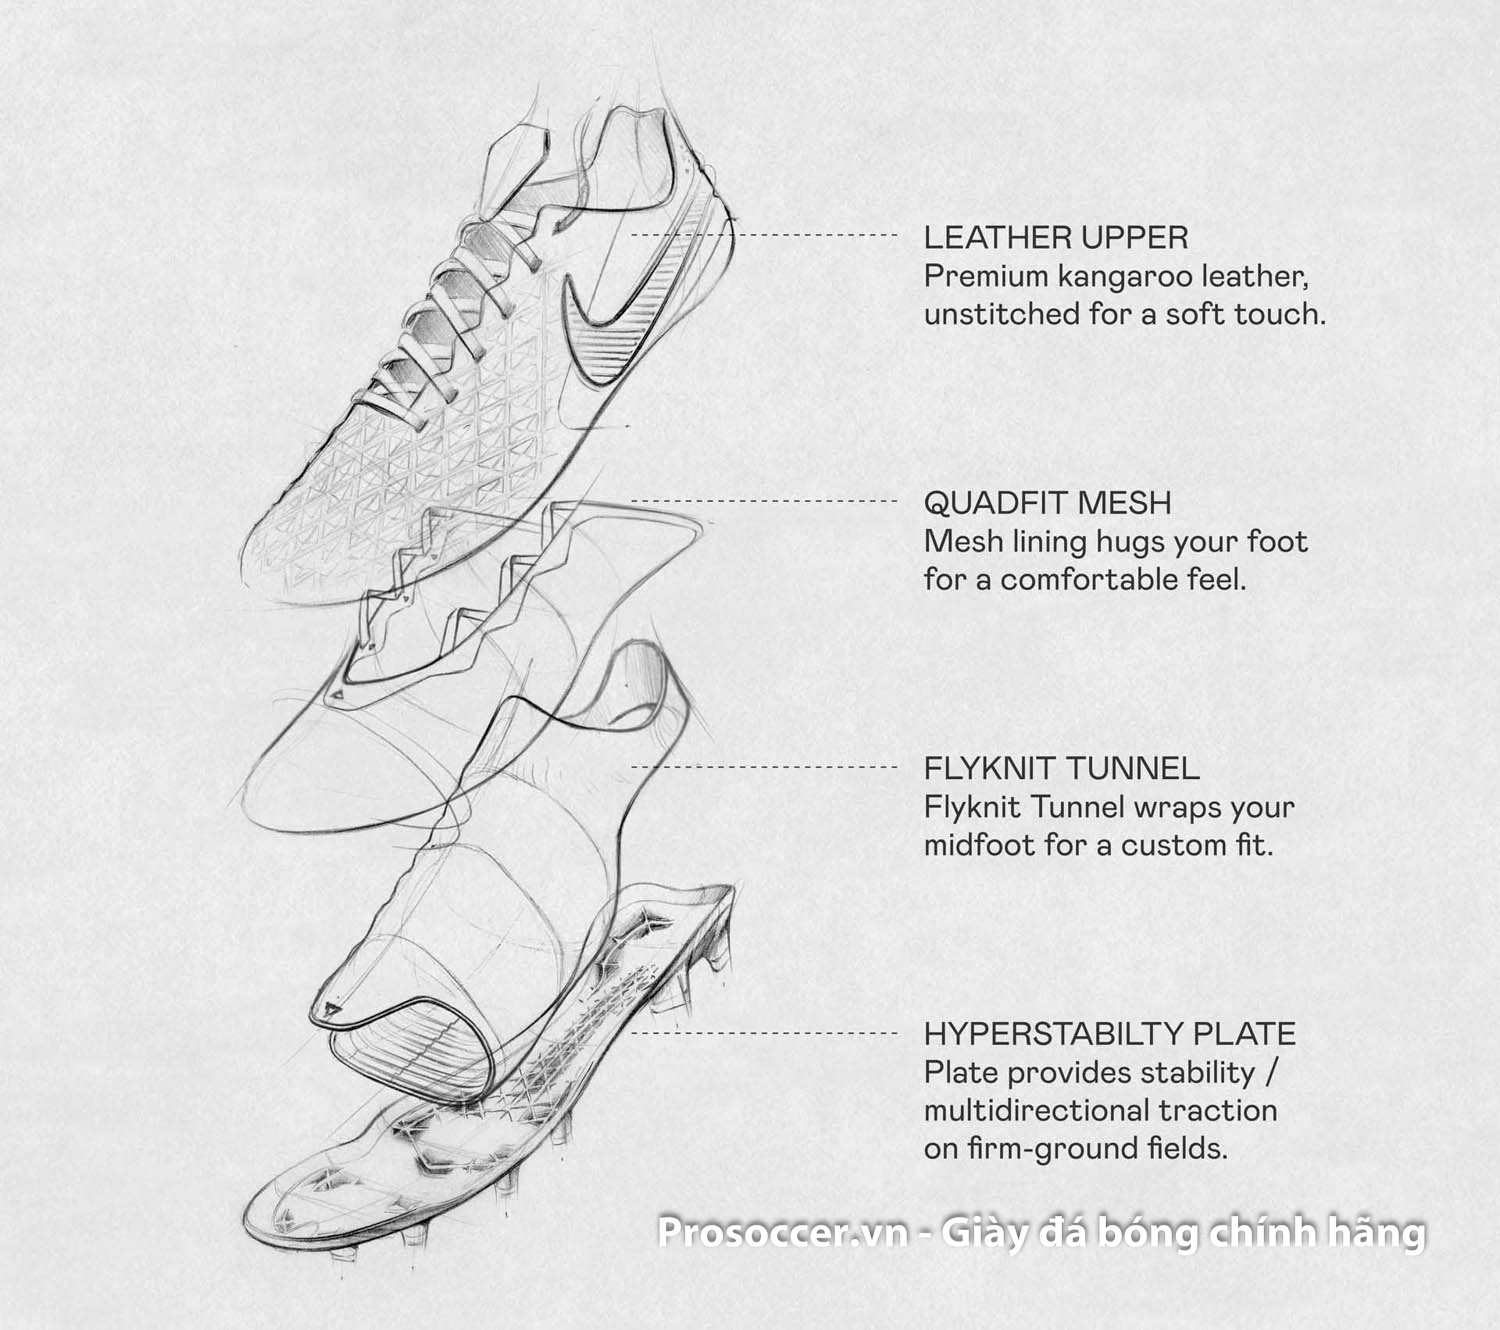 Đam mê bóng đá không thể thiếu một đôi giày chất lượng như Nike. Giày bóng đá Nike không chỉ đẹp mắt, mà còn cực kỳ chắc chắn và êm ái mang đến cho bạn sự thoải mái tối đa khi chơi bóng. Nếu bạn muốn trình diễn khả năng đá bóng của mình như một chuyên gia, hãy sở hữu ngay một đôi giày bóng đá Nike.